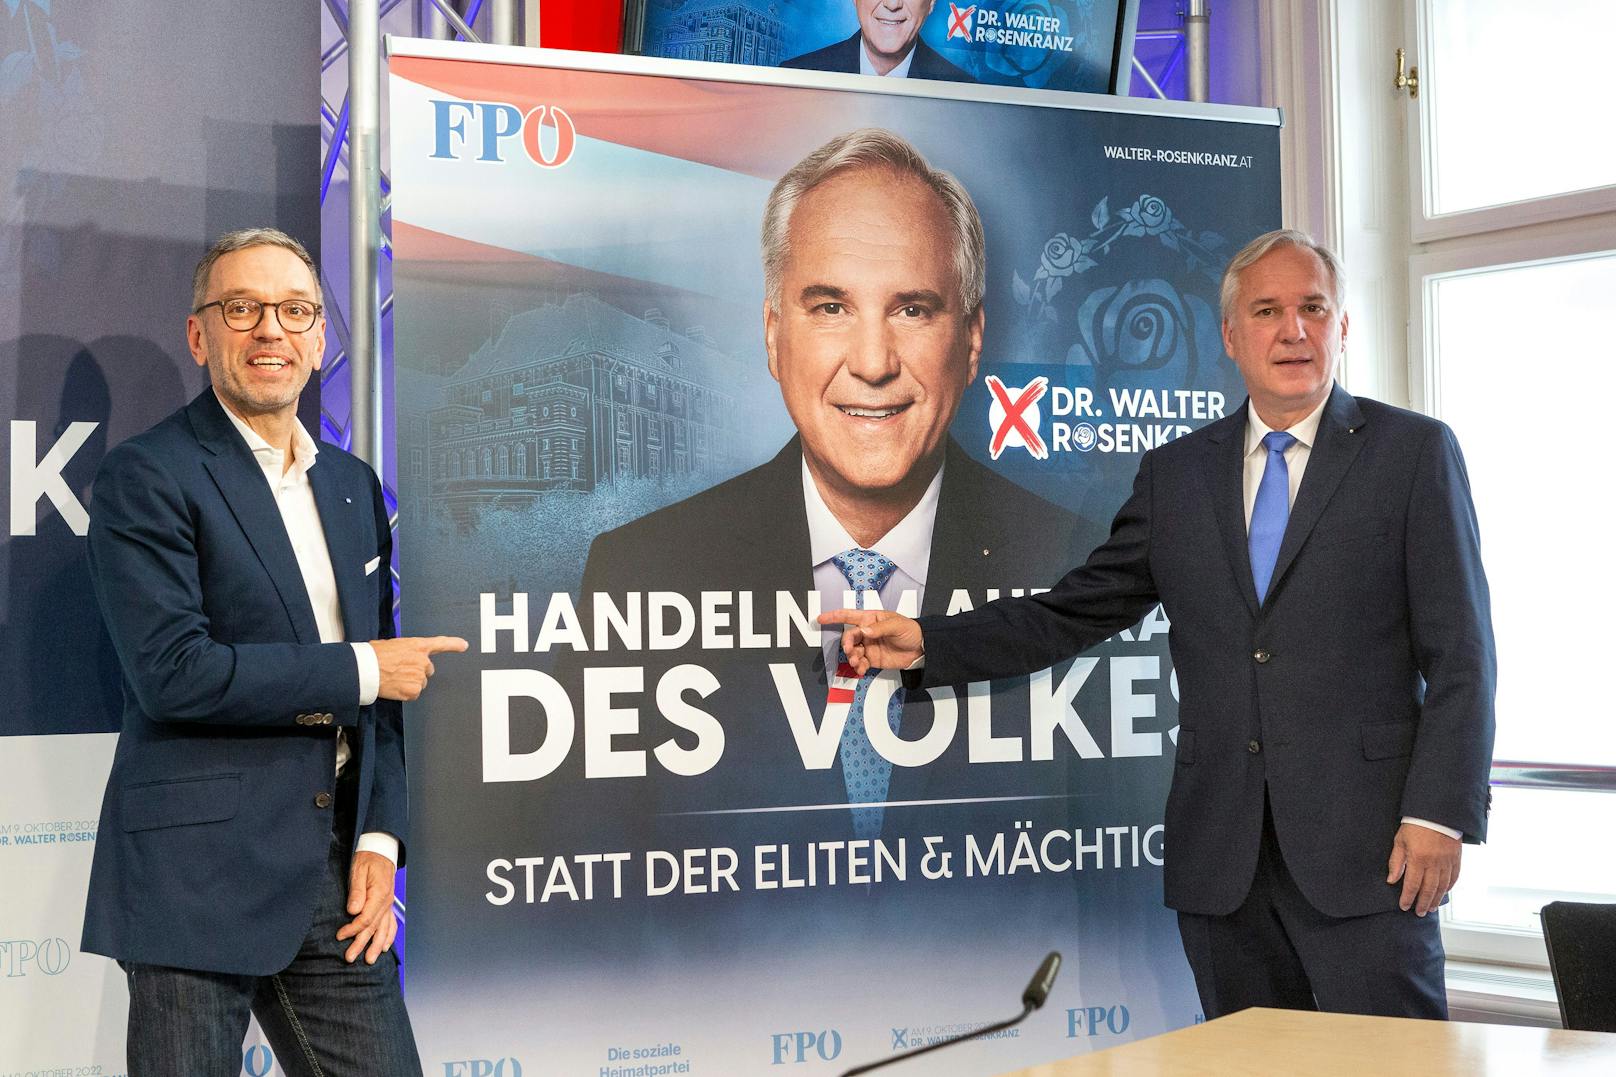 2,2 Mio. Euro – FPÖ zahlt für Wahlkampf mehr als Grüne